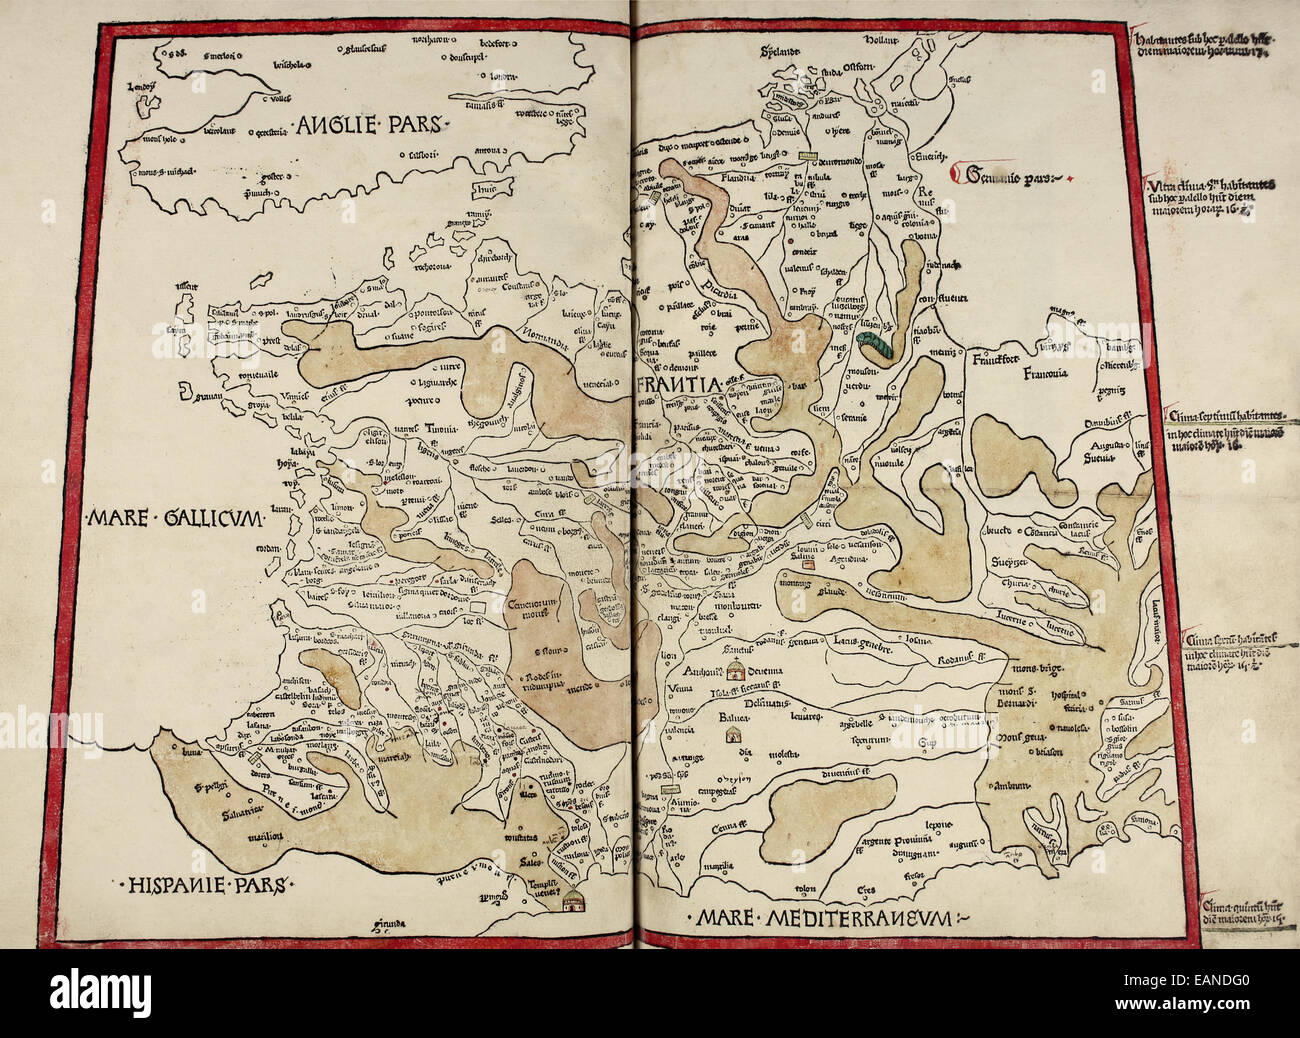 Karte von Frankreich aus "Cosmographia" von Claudius Ptolemäus (Ptolemaeus) (90-168AD). Siehe Beschreibung für mehr Informationen. Stockfoto